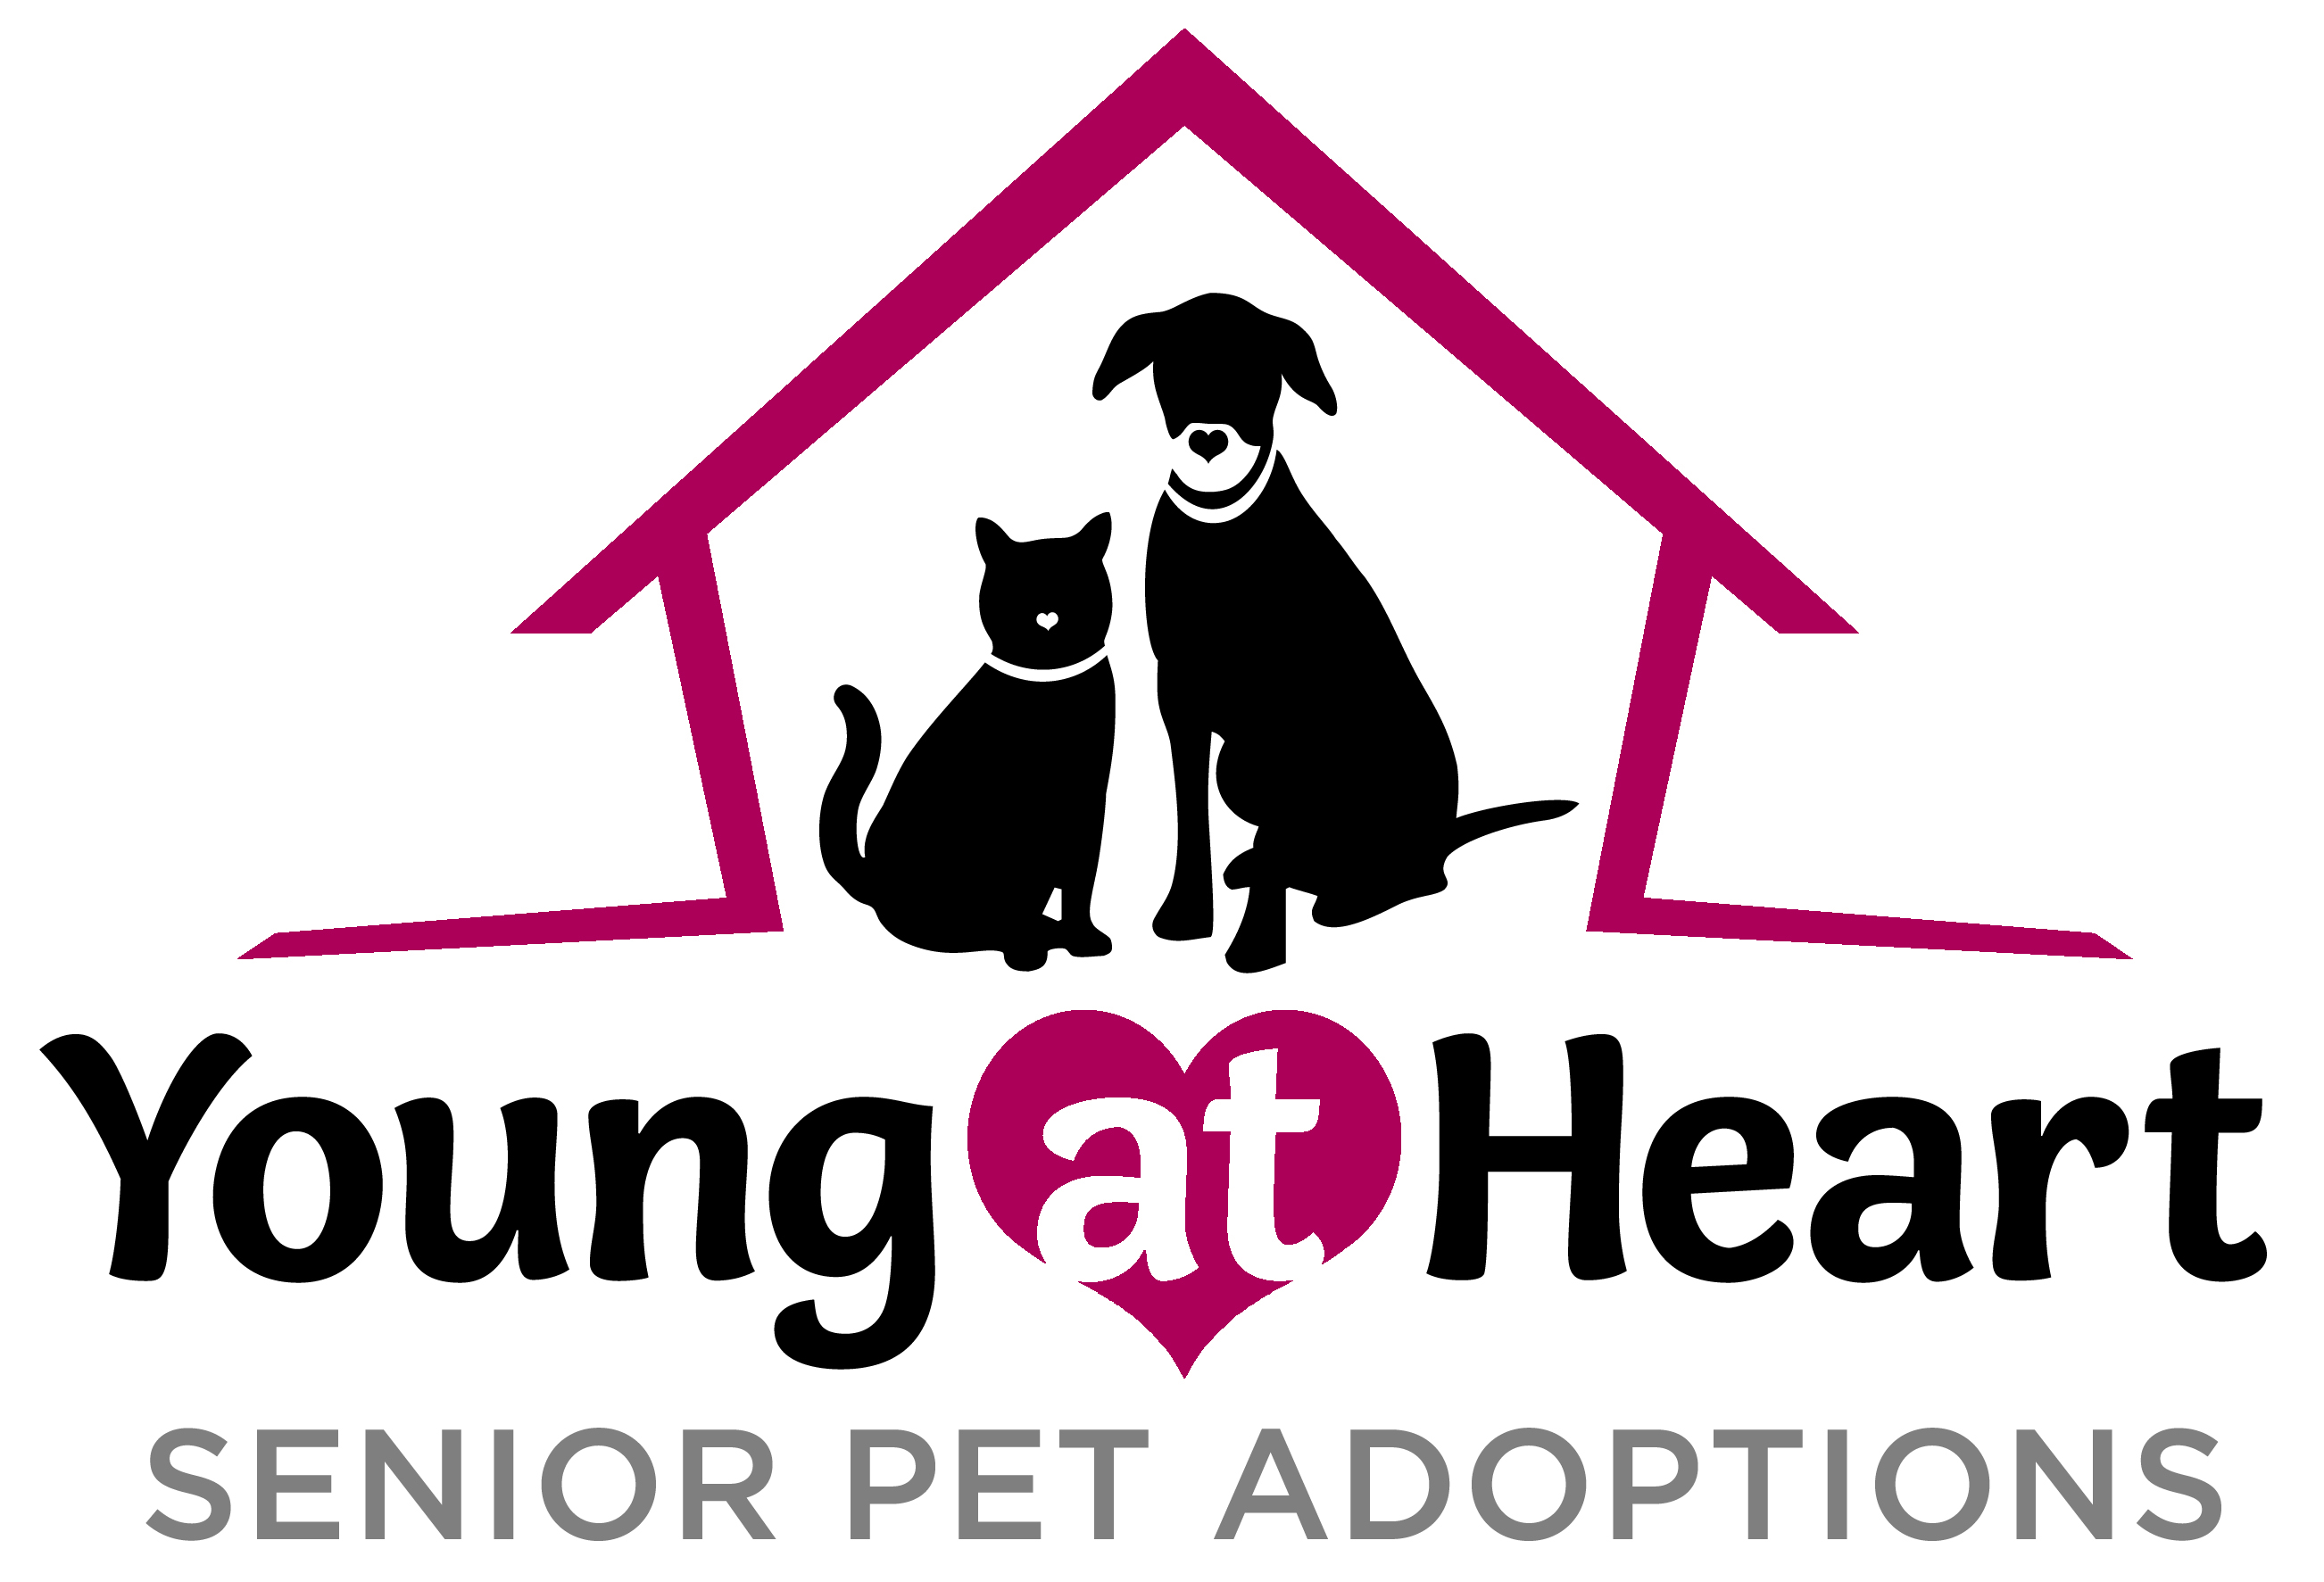 Young at Heart Senior Pet Adoptions